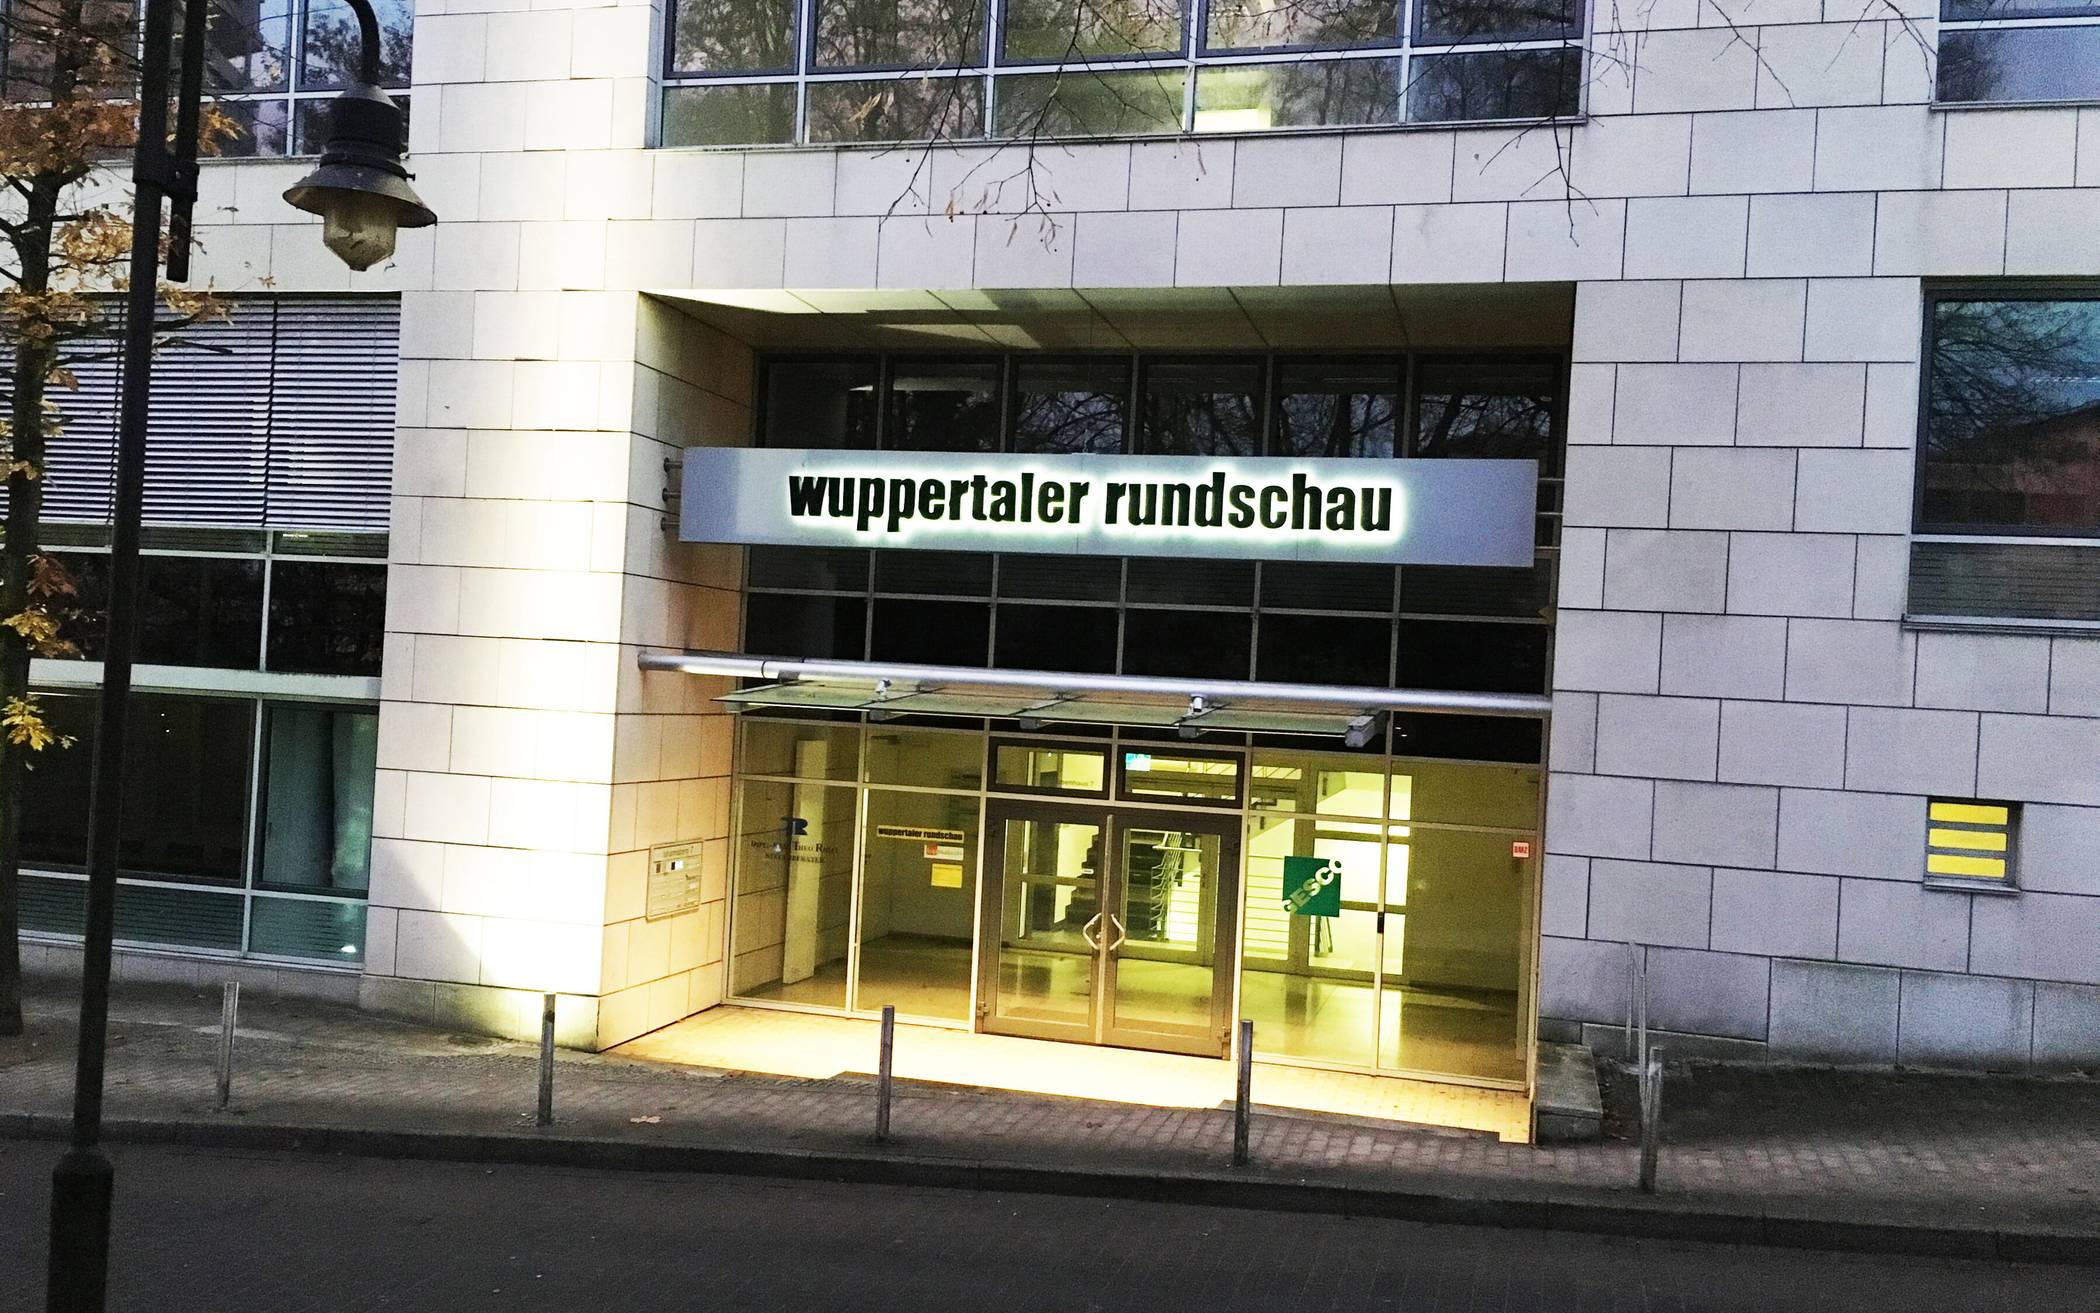  Die Rundschau hat ihren Sitz an Johannisberg. 